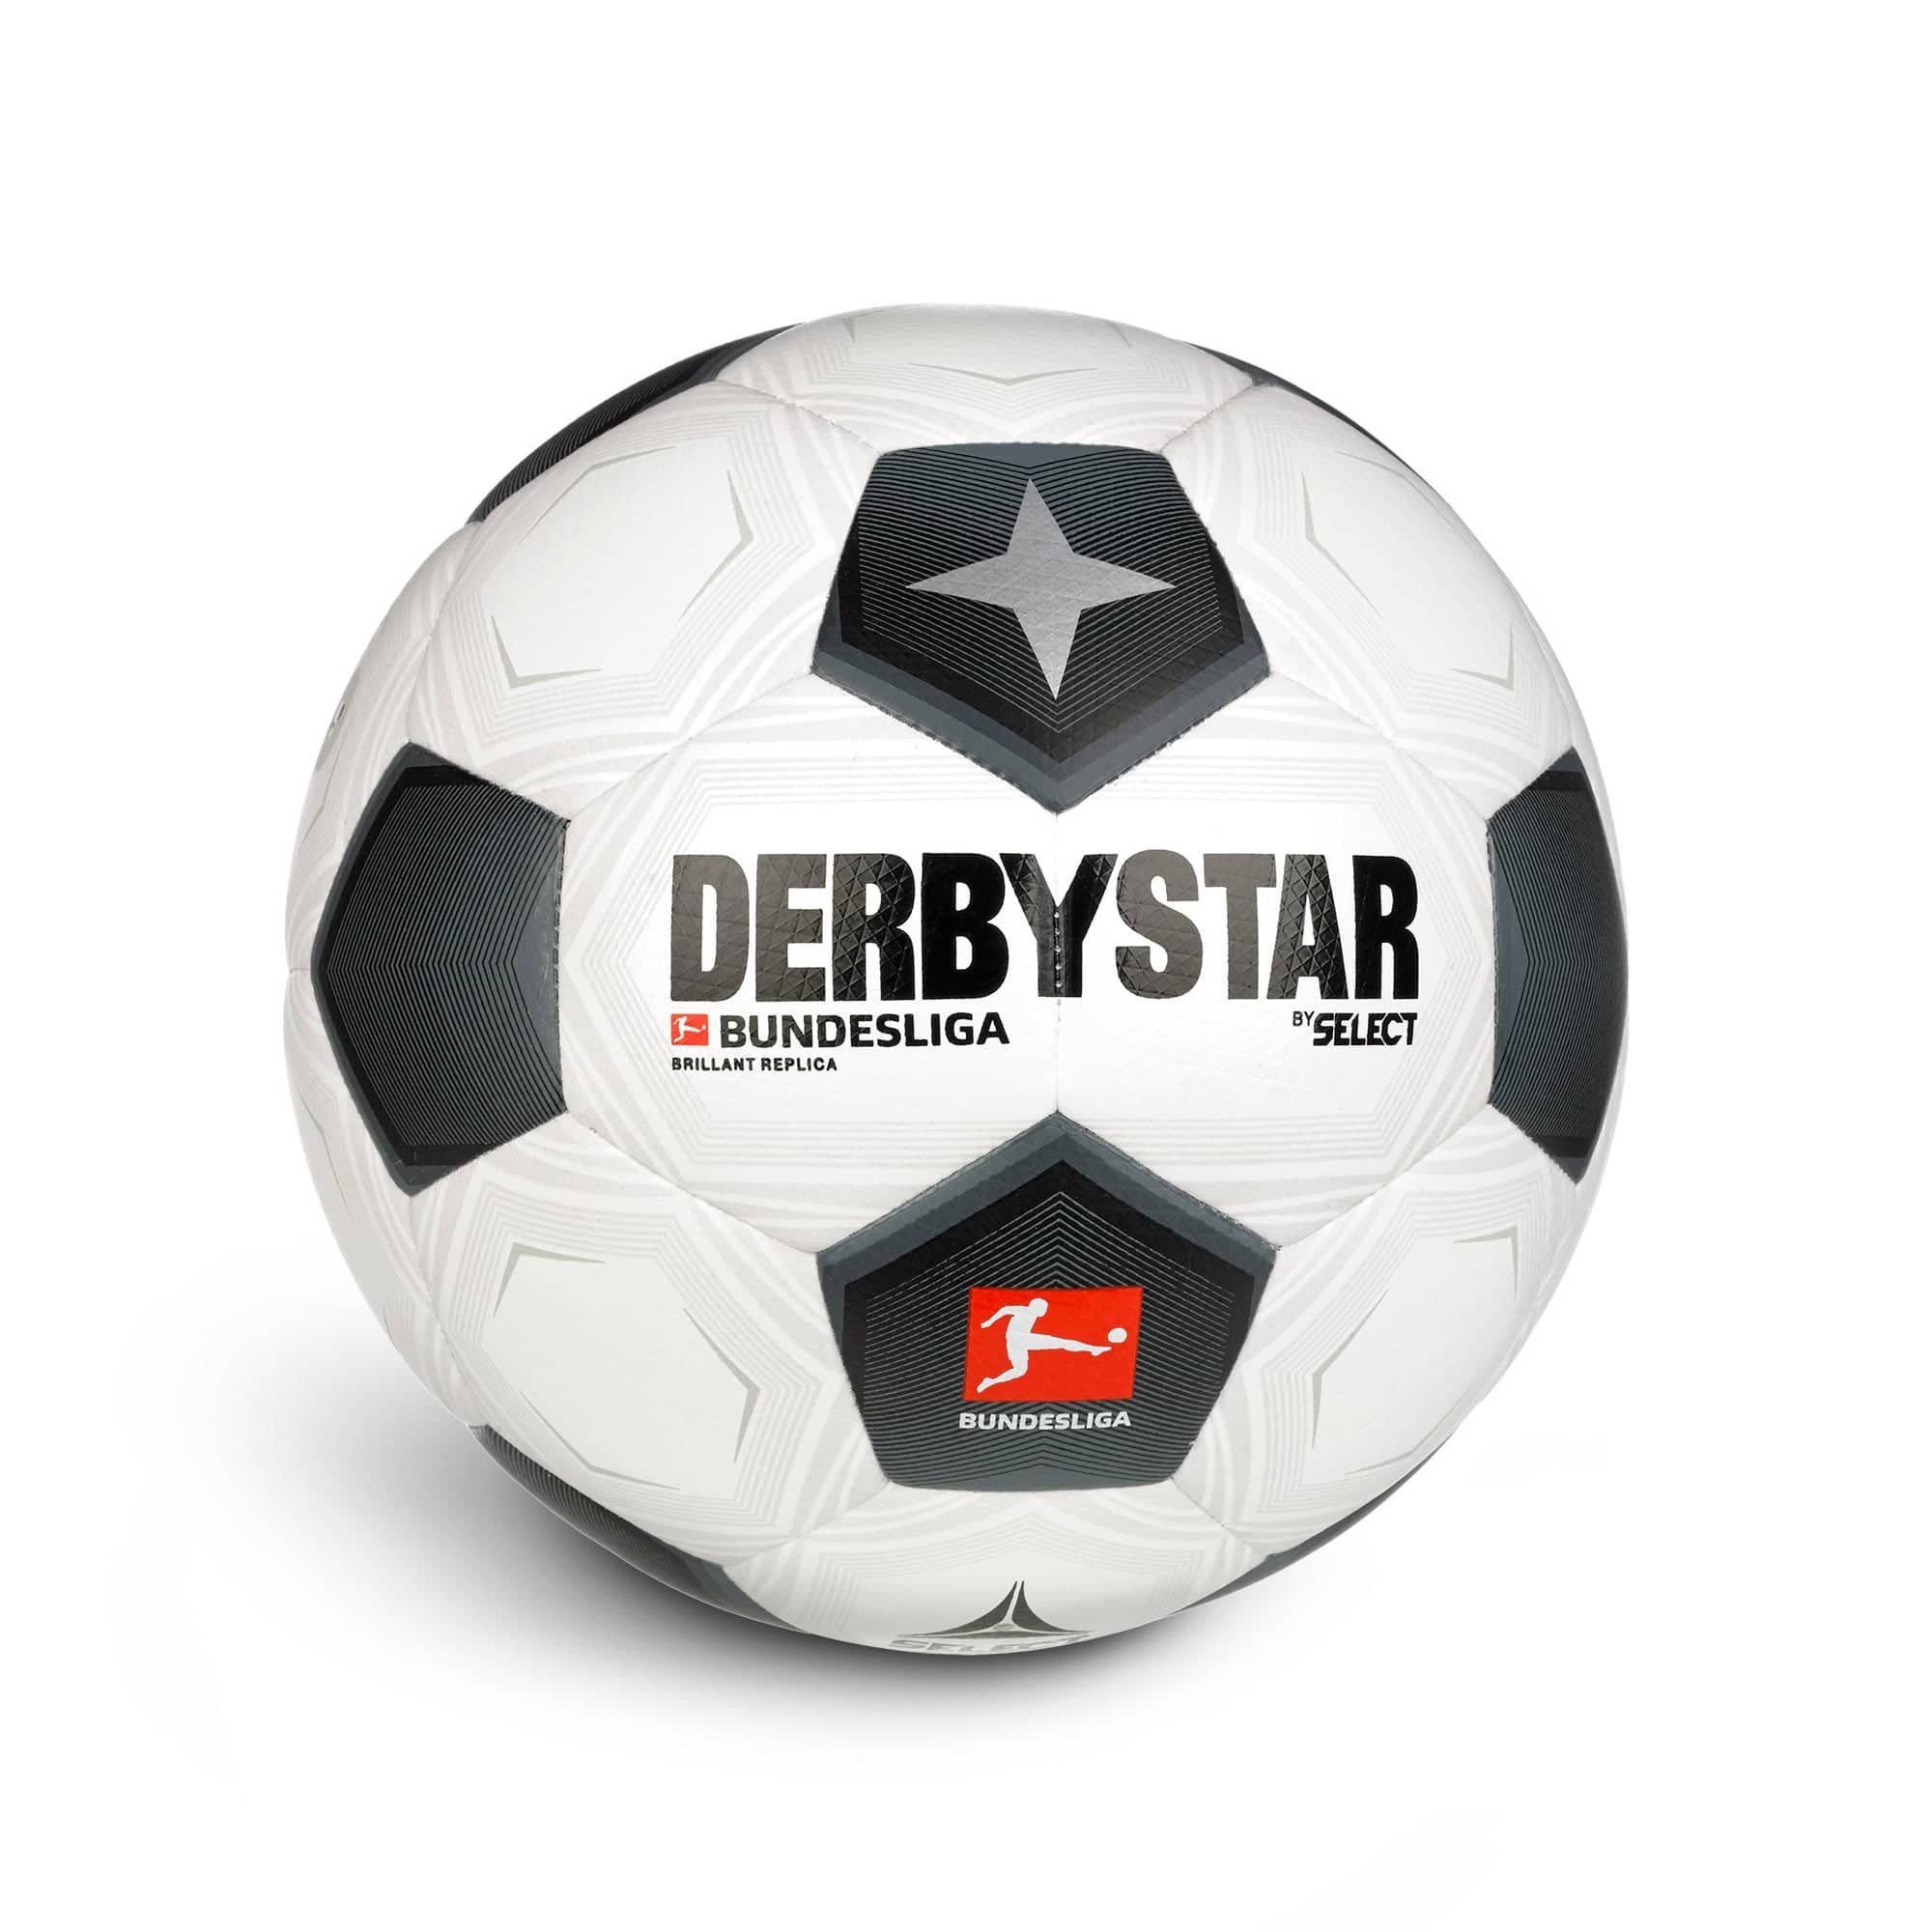 Derbystar Bundesliga Brillant Replica Classic v23 Trainingsball Weiss Schwarz F023